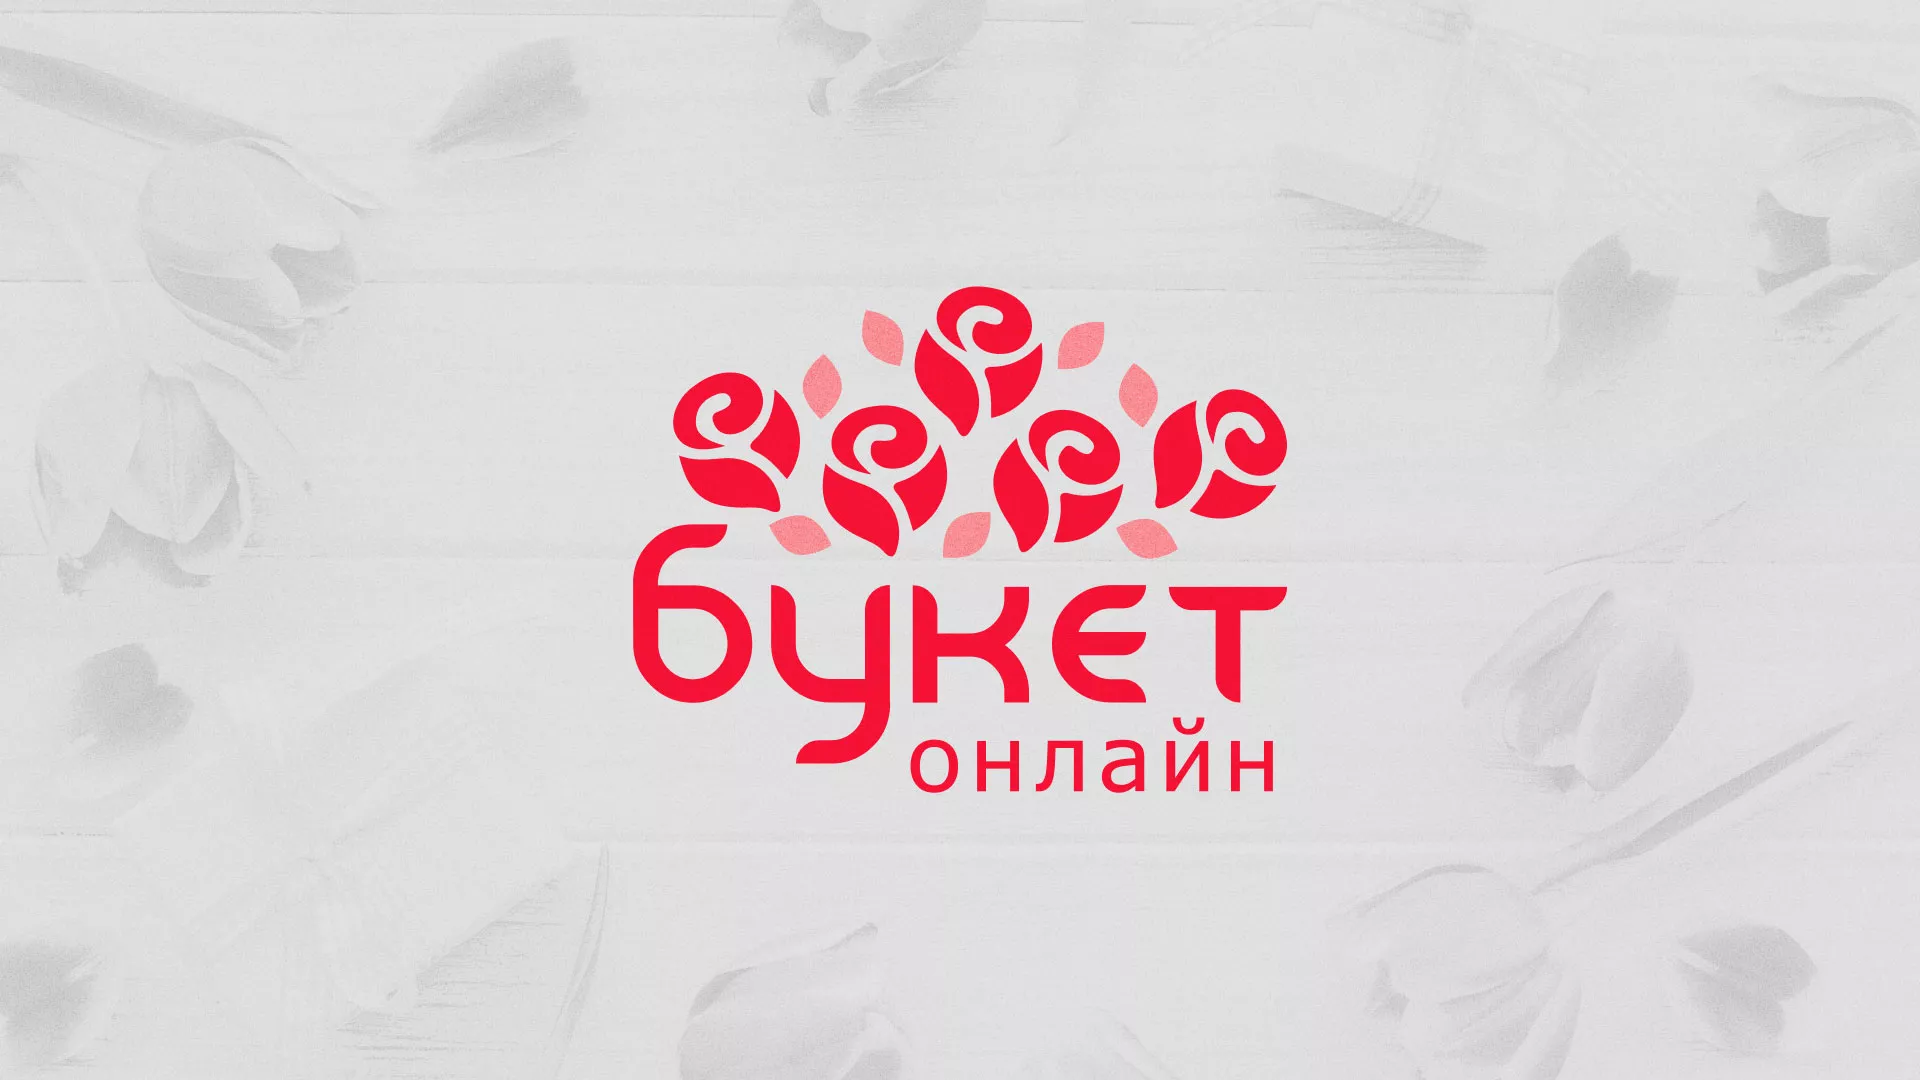 Создание интернет-магазина «Букет-онлайн» по цветам в Первомайске